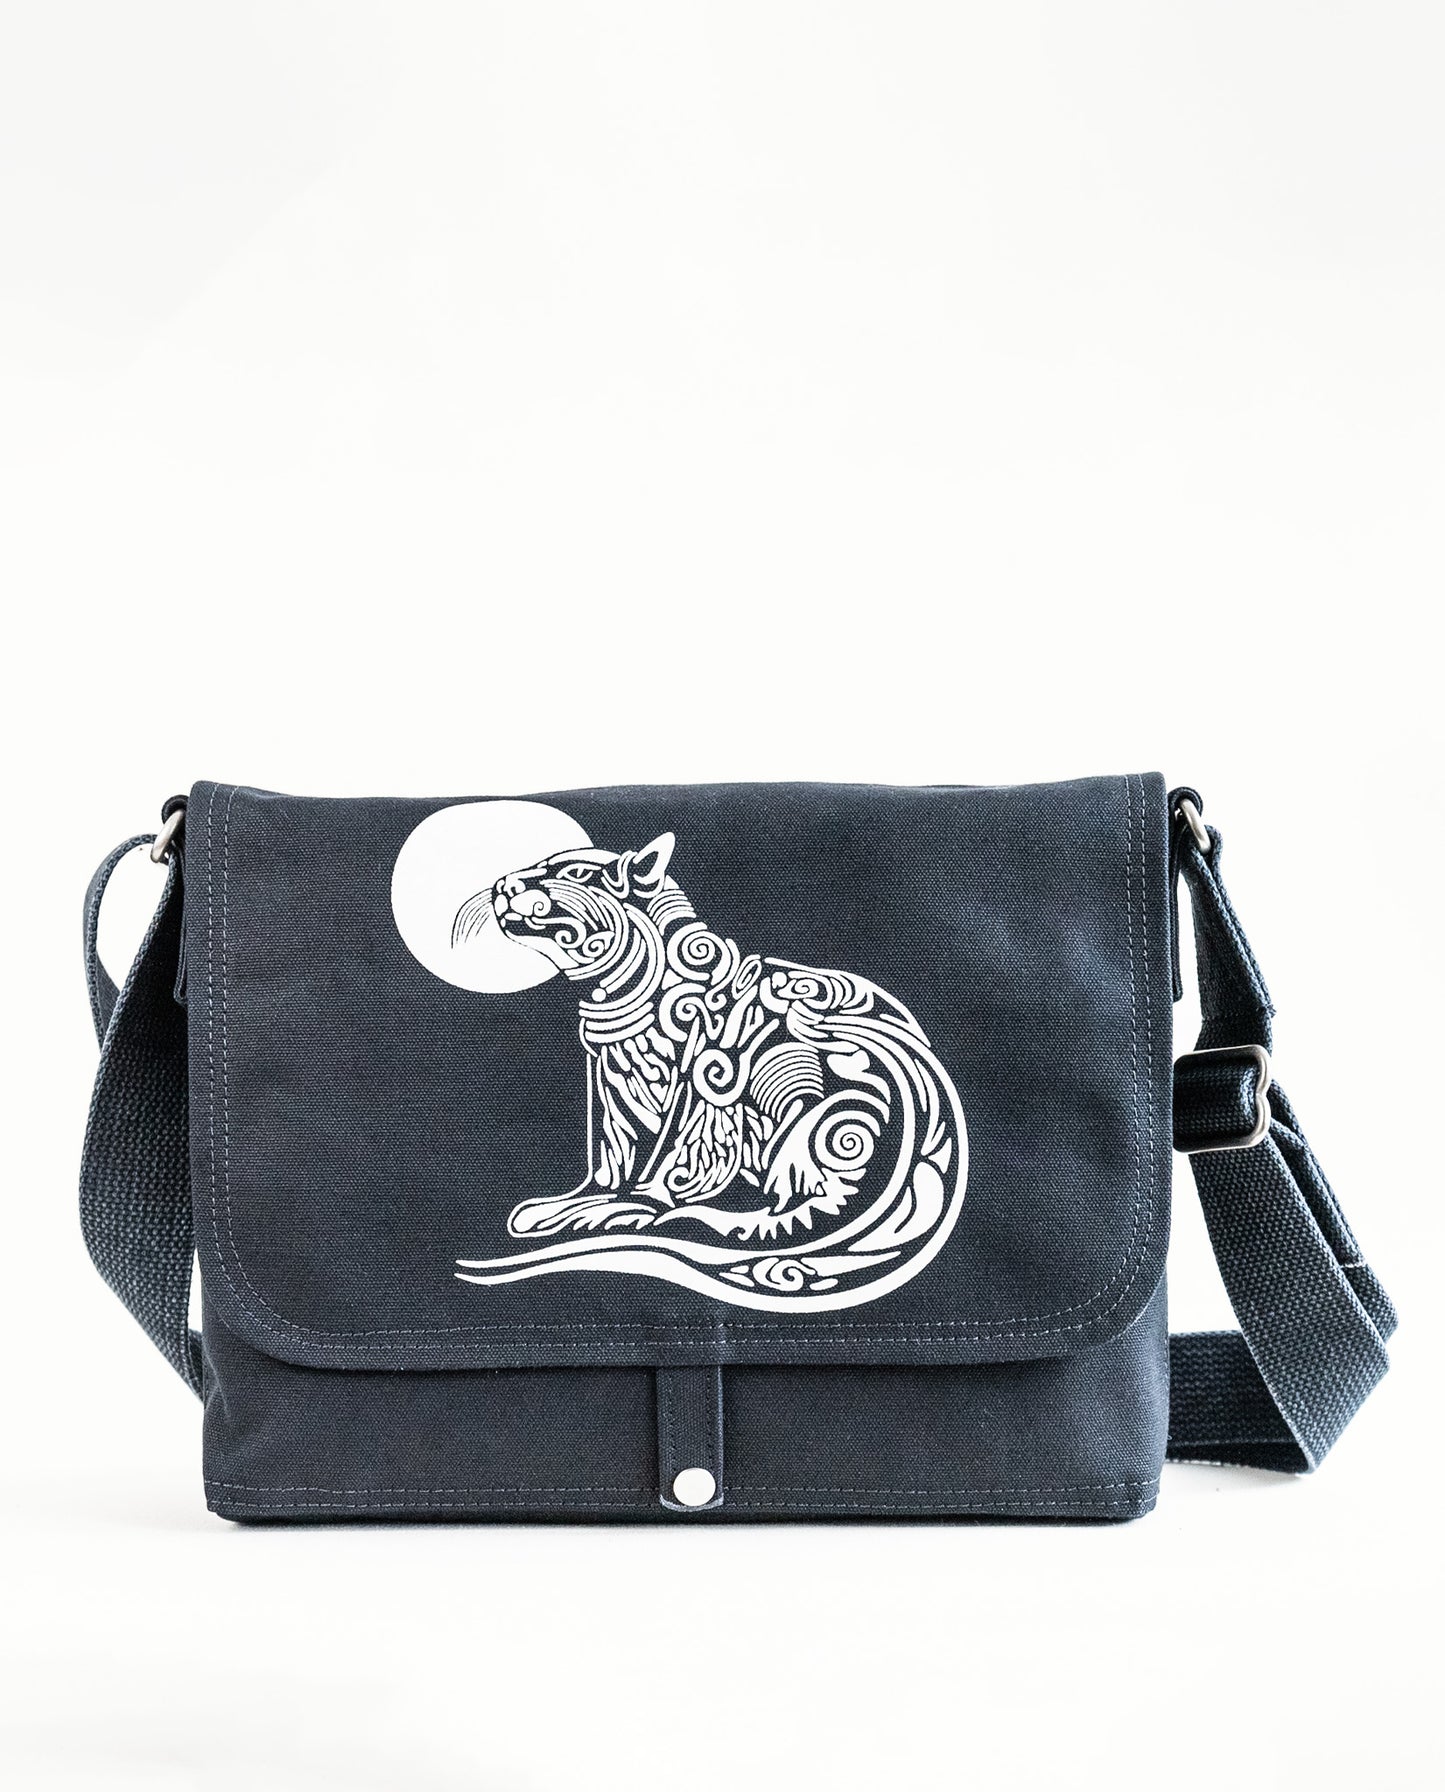 Front exterior of Dock 5’s Wild Cat Canvas Messenger Bag in black featuring art from owner Natalija Walbridge